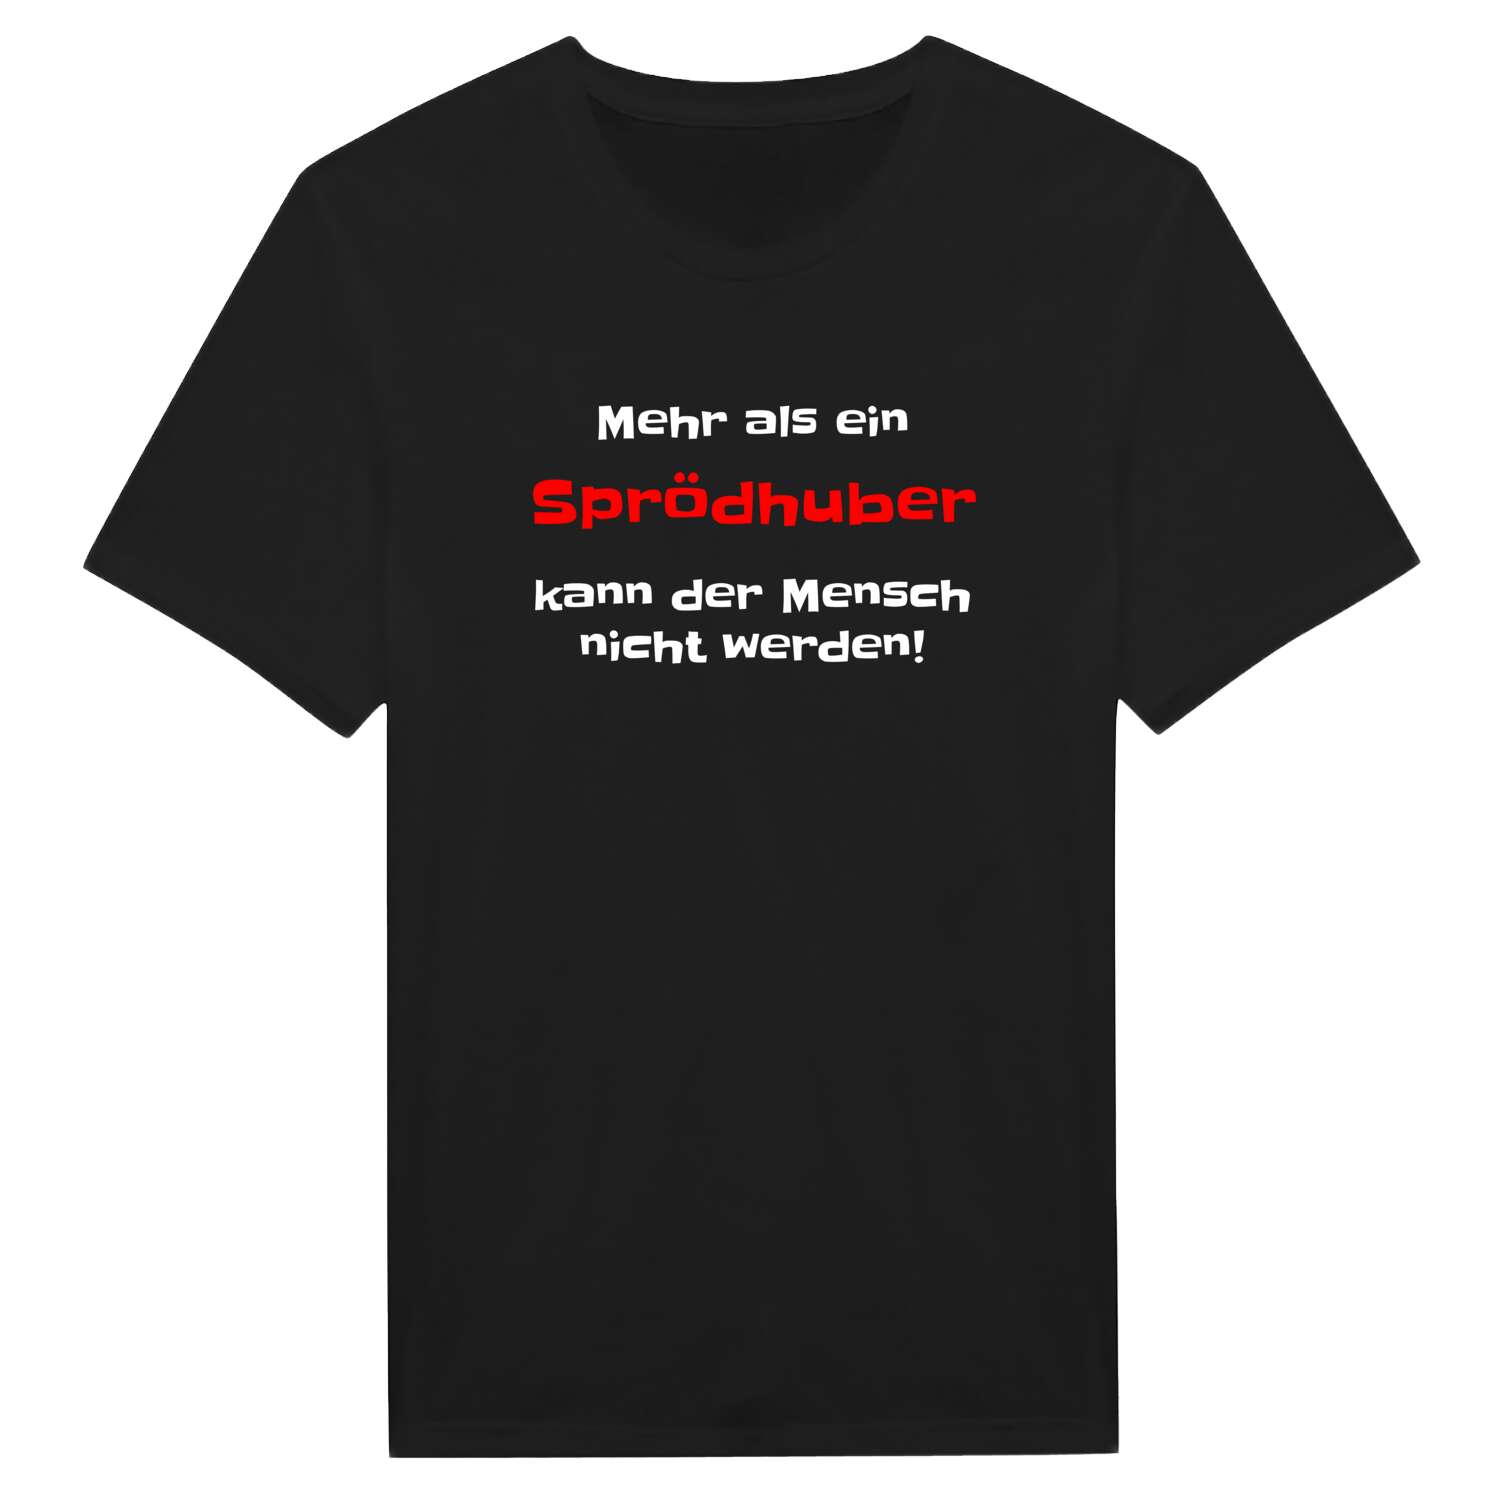 Sprödhub T-Shirt »Mehr als ein«